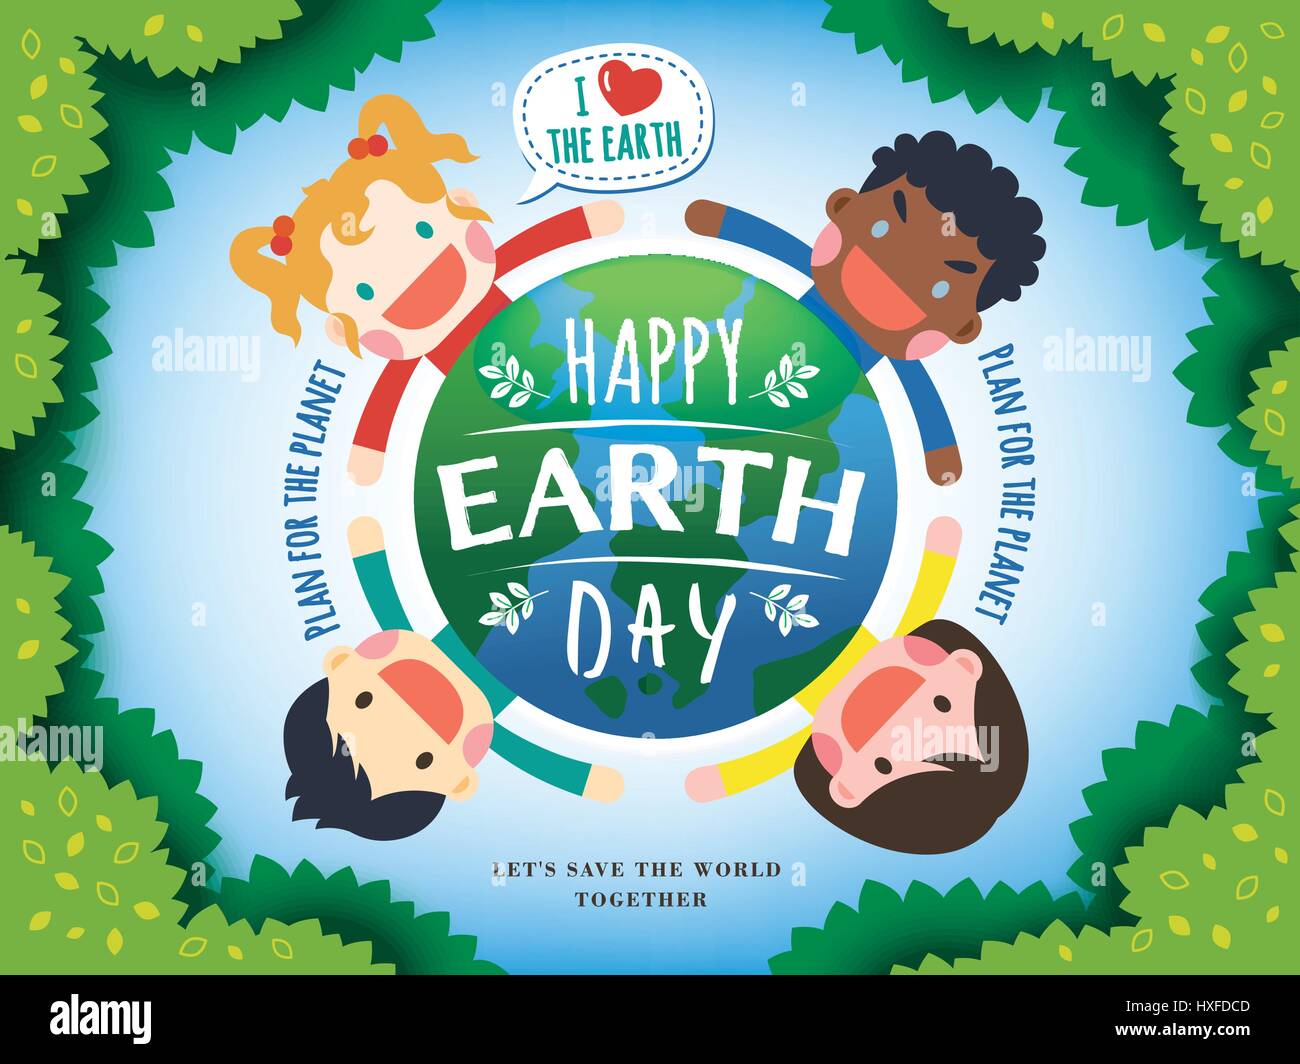 Le jour de la terre illustration avec quatre enfants entourant une masse, feuilles et fond bleu clair Illustration de Vecteur